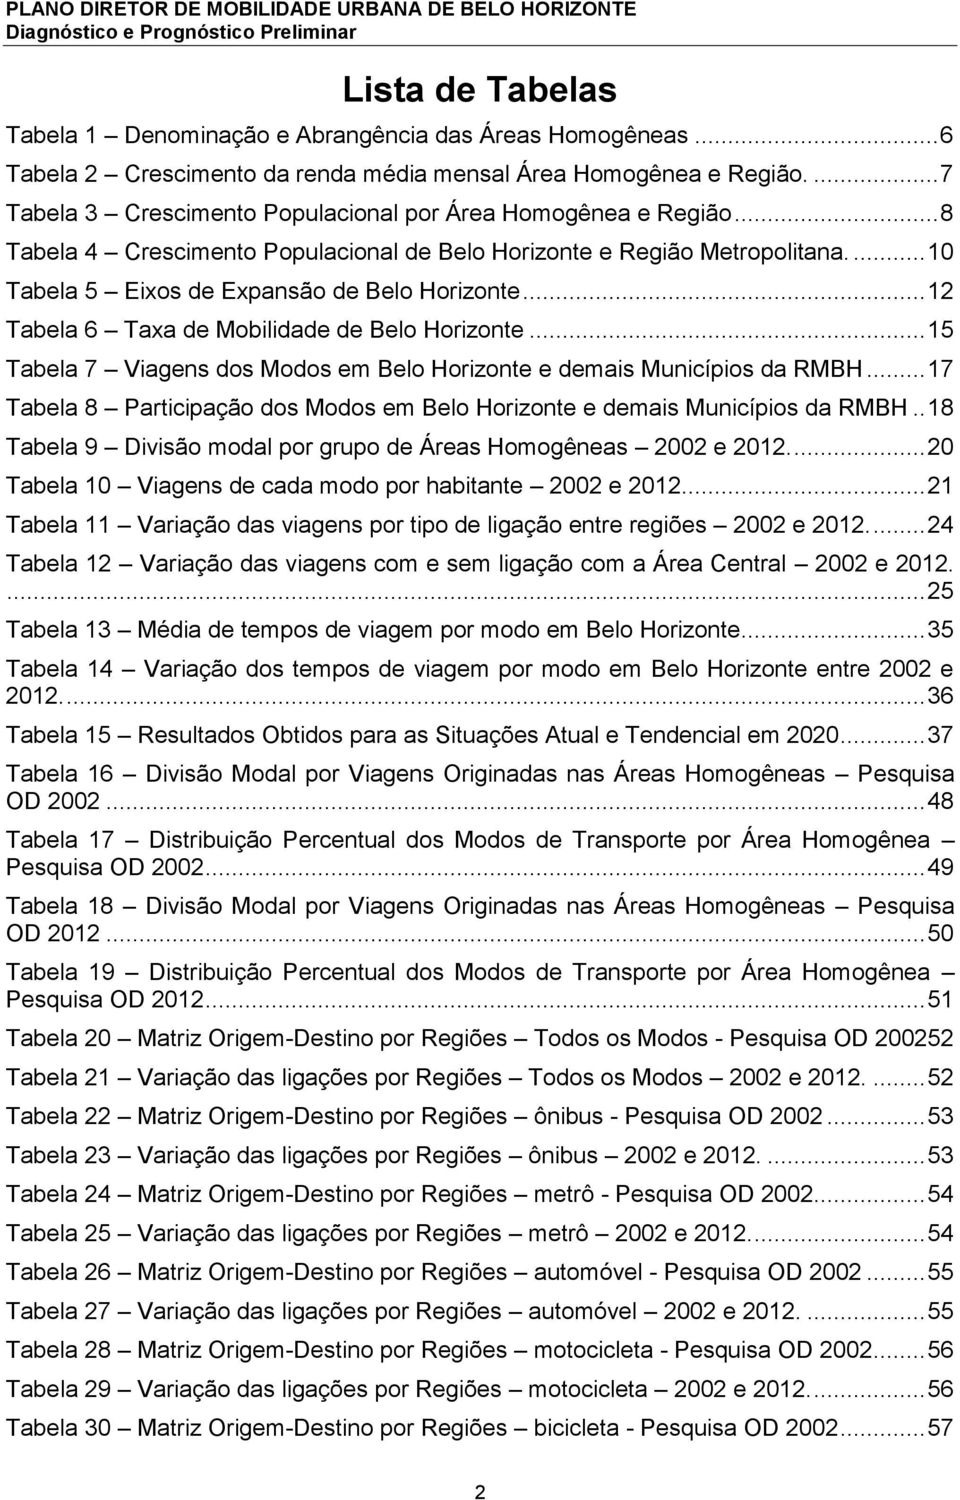 .. 12 Tabela 6 Taxa de Mobilidade de Belo Horizonte... 15 Tabela 7 Viagens dos Modos em Belo Horizonte e demais Municípios da RMBH.